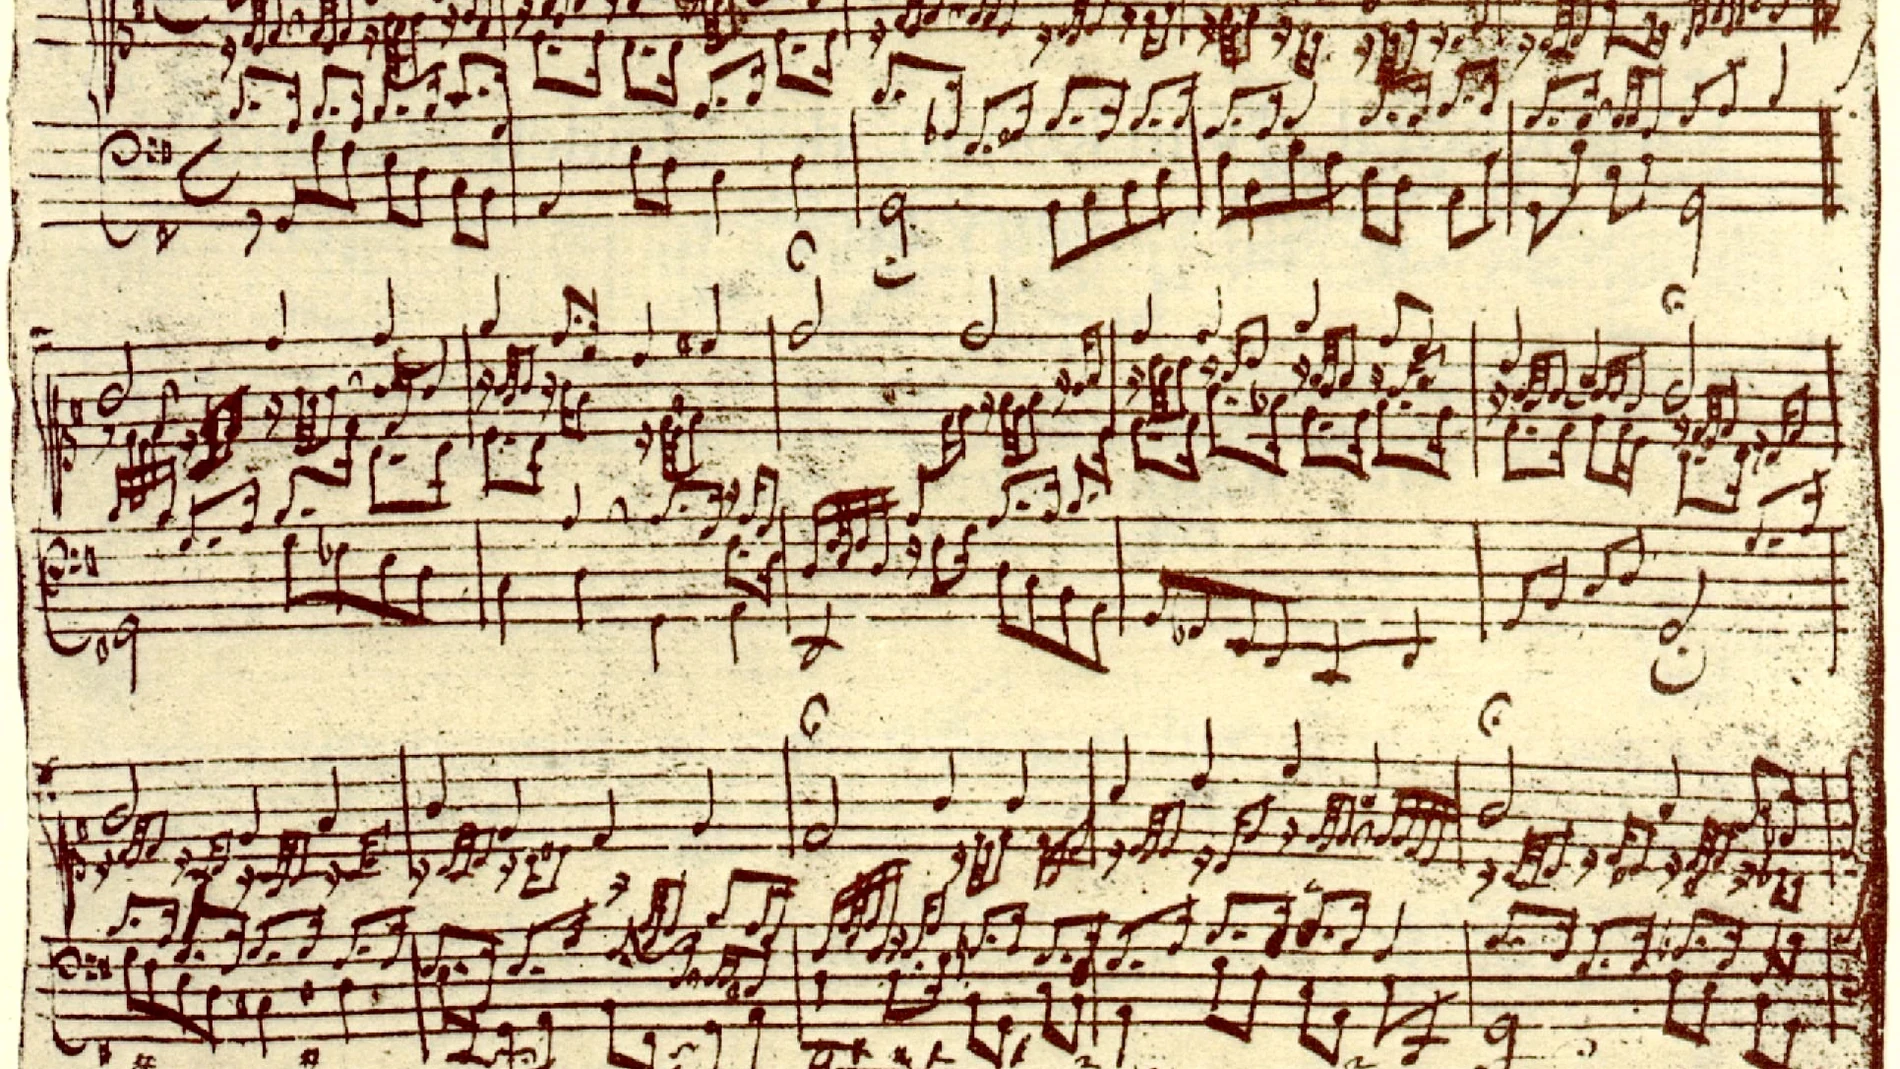 Las partituras de Beethoven estaban llenas de reescrituras y enmiendas, algo muy distinto a lo que le sucedía a su predecesor Mozart